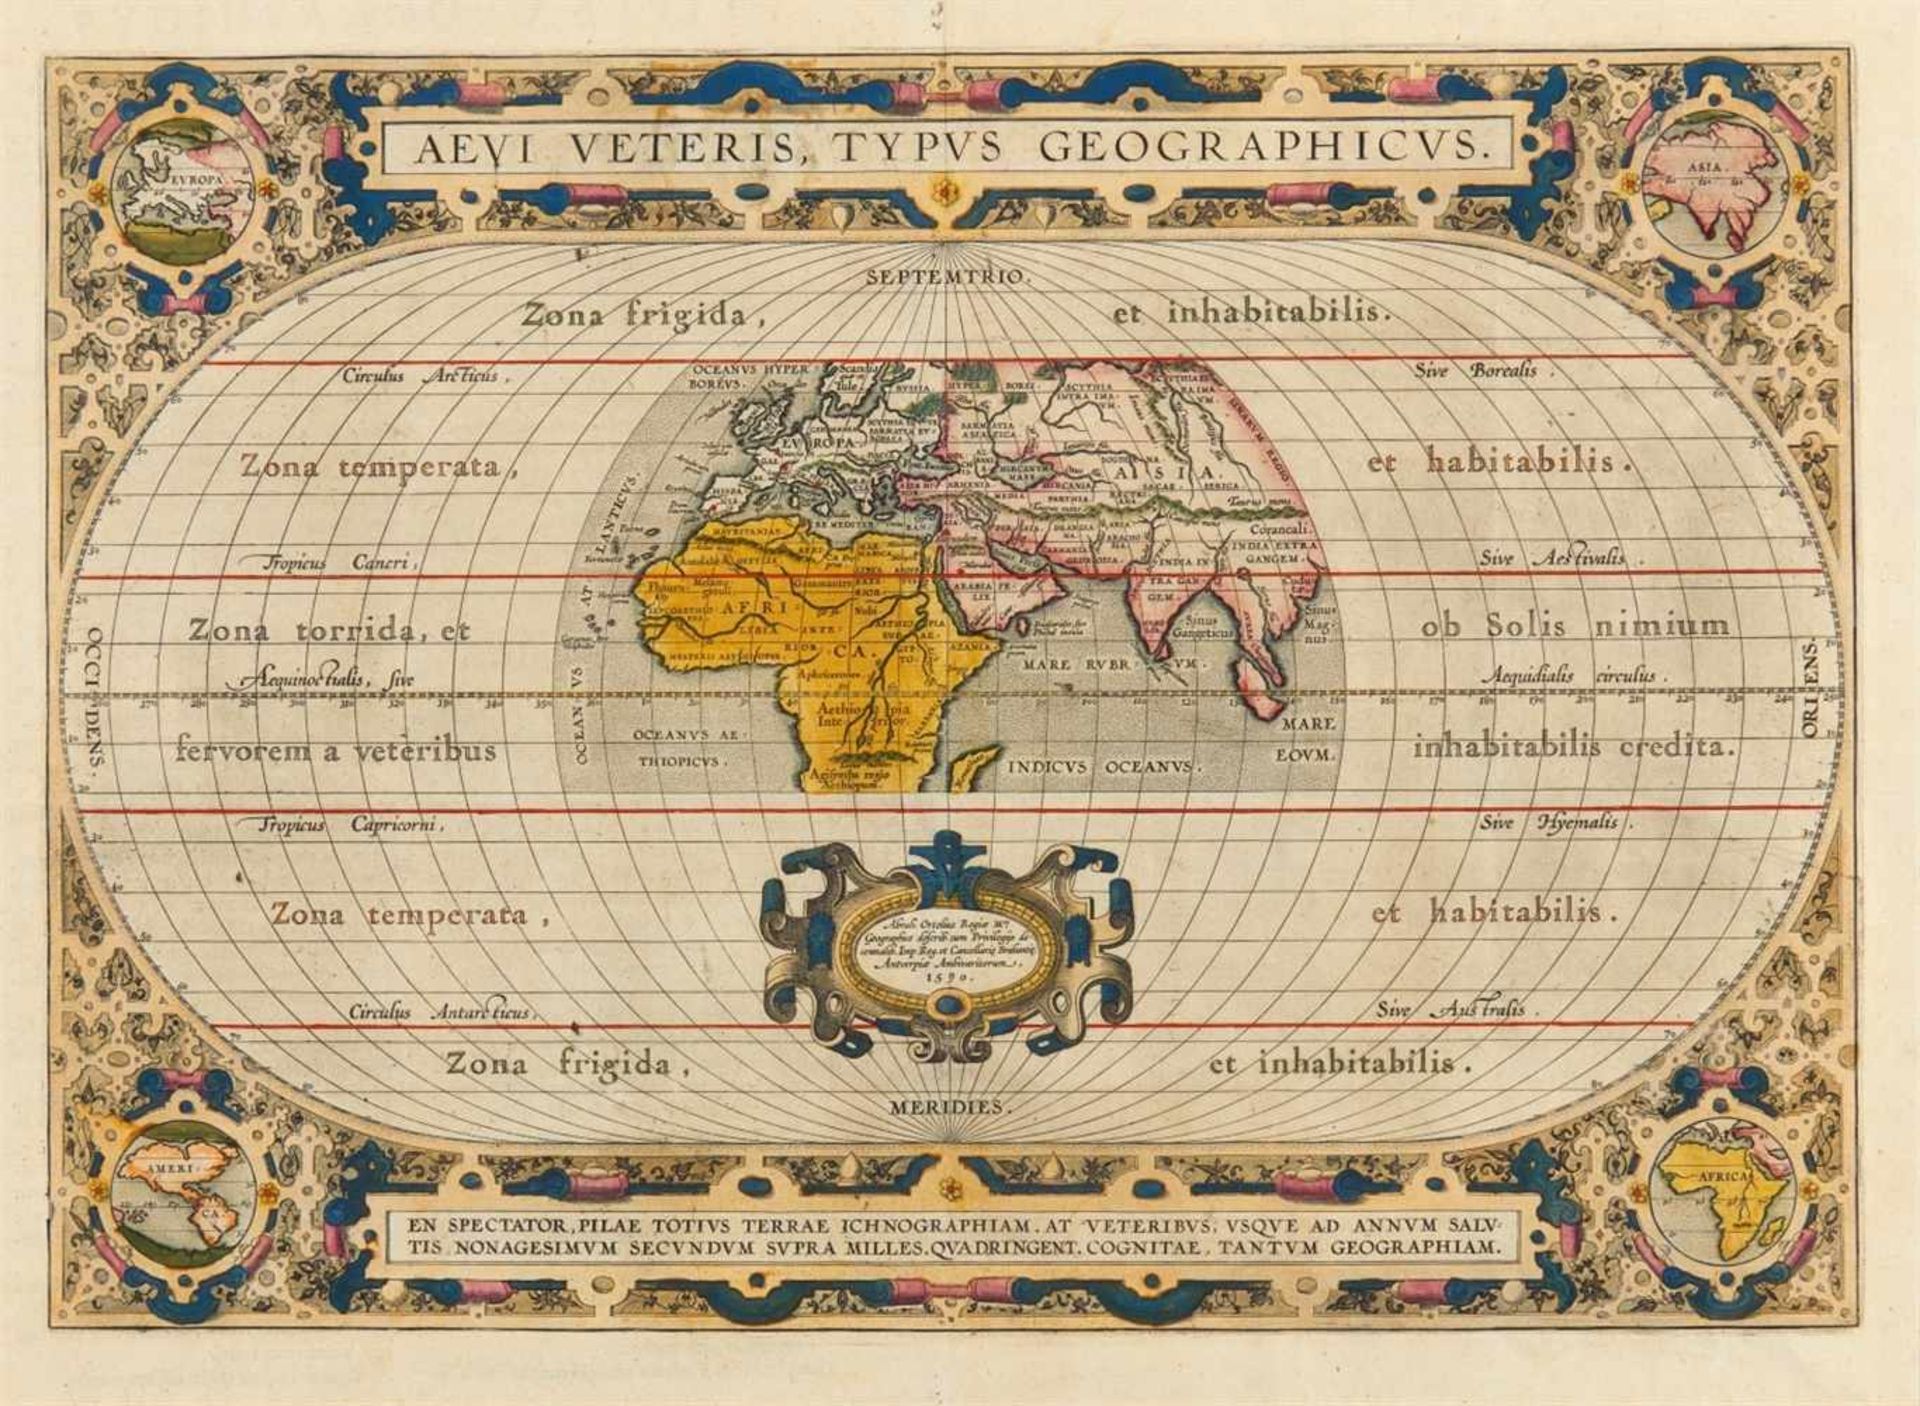 Weltkarte - Alte Welt. – Aevi Veteris Typus Geographicus, die Alte Welt mit Afrika, Europa und Asien